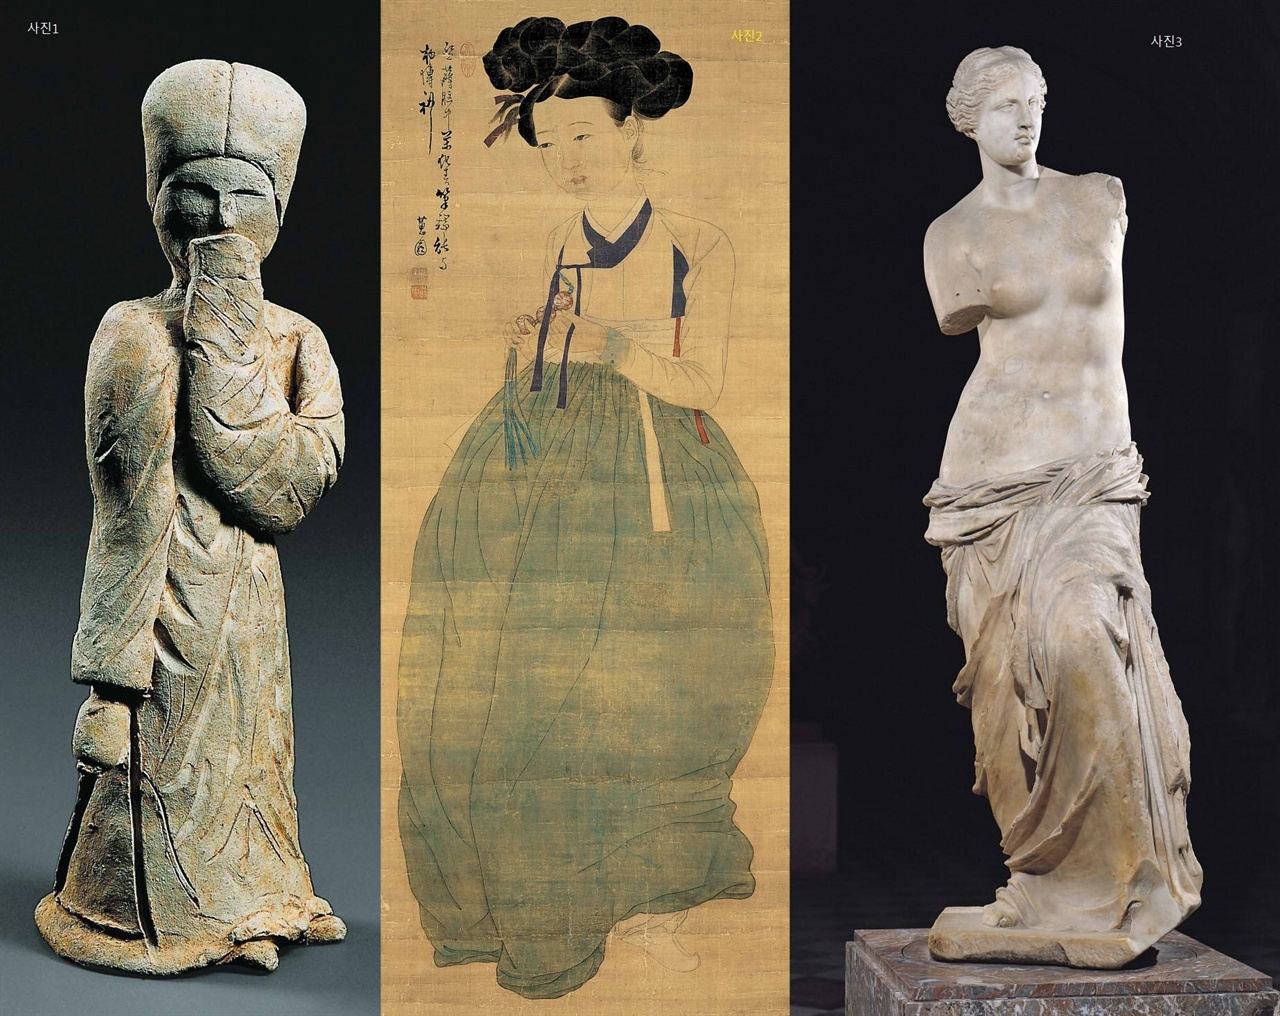 〈미인도(美人圖)〉(비단에 채색. 114.2×45.7cm. 간송미술관), 〈밀로의 비너스(Venus de Milo)〉(기원전 2세기에서 1세기 초 그리스 말기의 비너스 상. 대리석. 높이 204cm. 프랑스 파리 루브르미술관) 